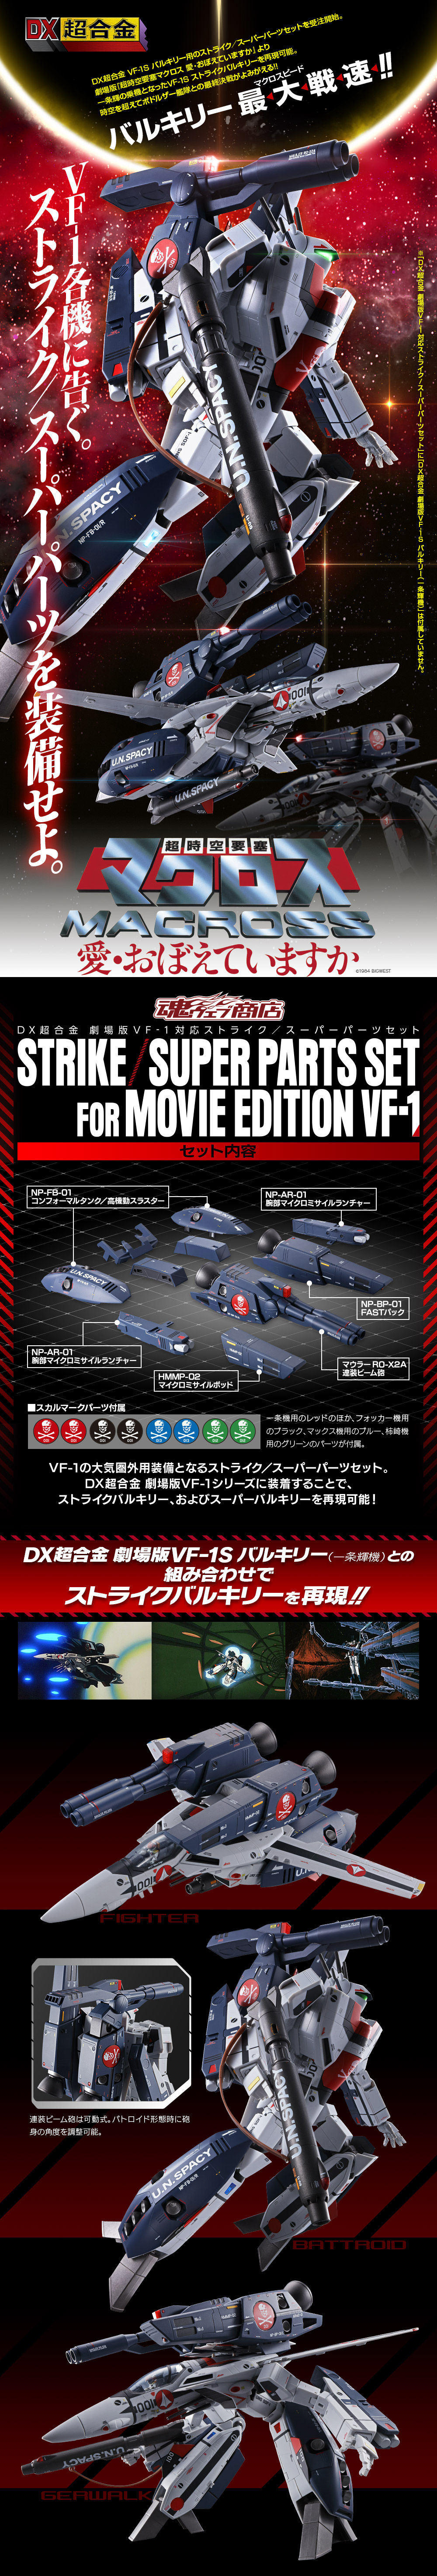 マクロス DX超合金 劇場版VF-1対応ストライク／スーパーパーツセット